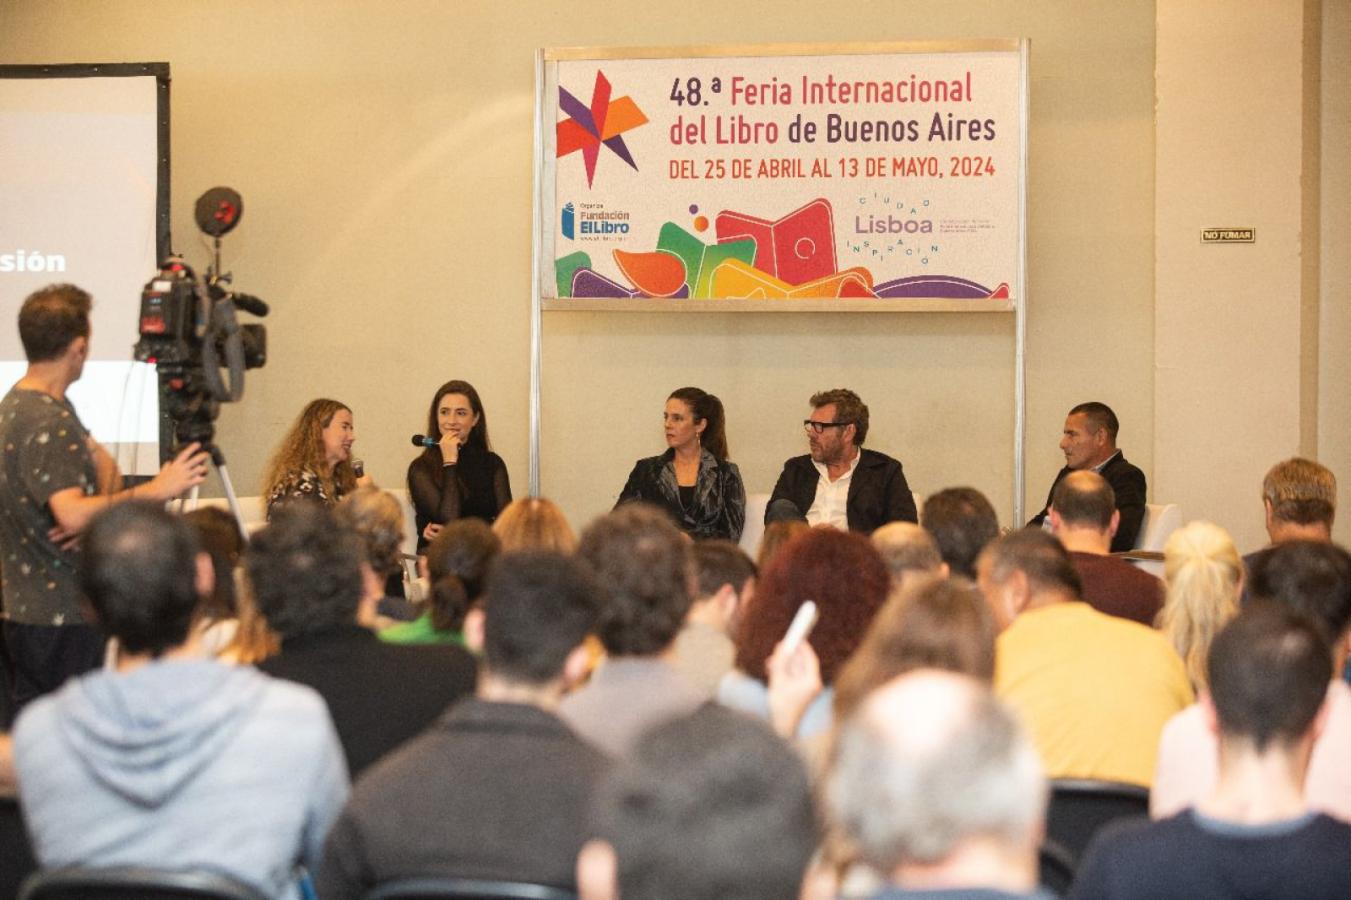 Imagen Milena Gimón, Daniela Aza, Mariano Zegarelli, Silvio Velo y Olivia Goldschmidt, en la charla debate sobre inclusión.